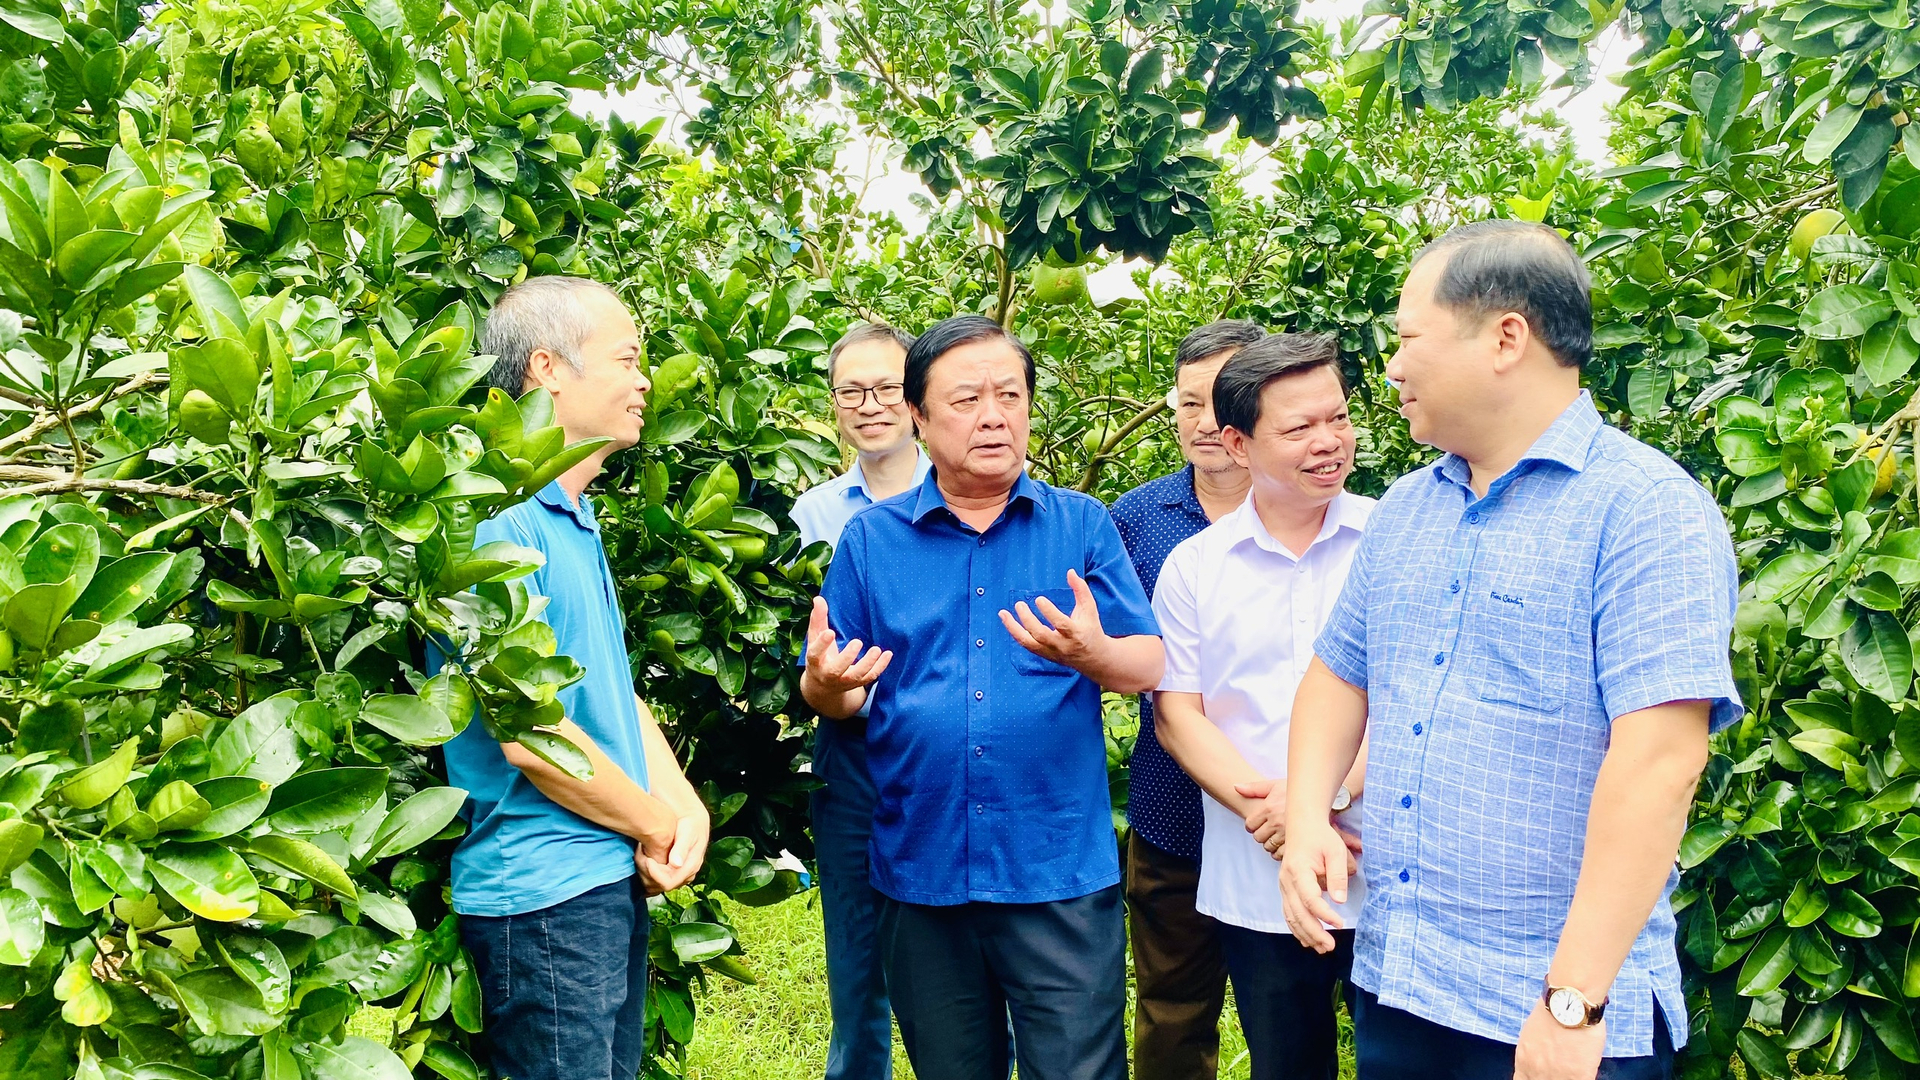 Bộ trưởng Lê Minh Hoan cùng lãnh đạo tỉnh Hòa Bình thăm một trang trại trồng bưởi tại Hòa Bình. Ảnh: Minh Phúc.